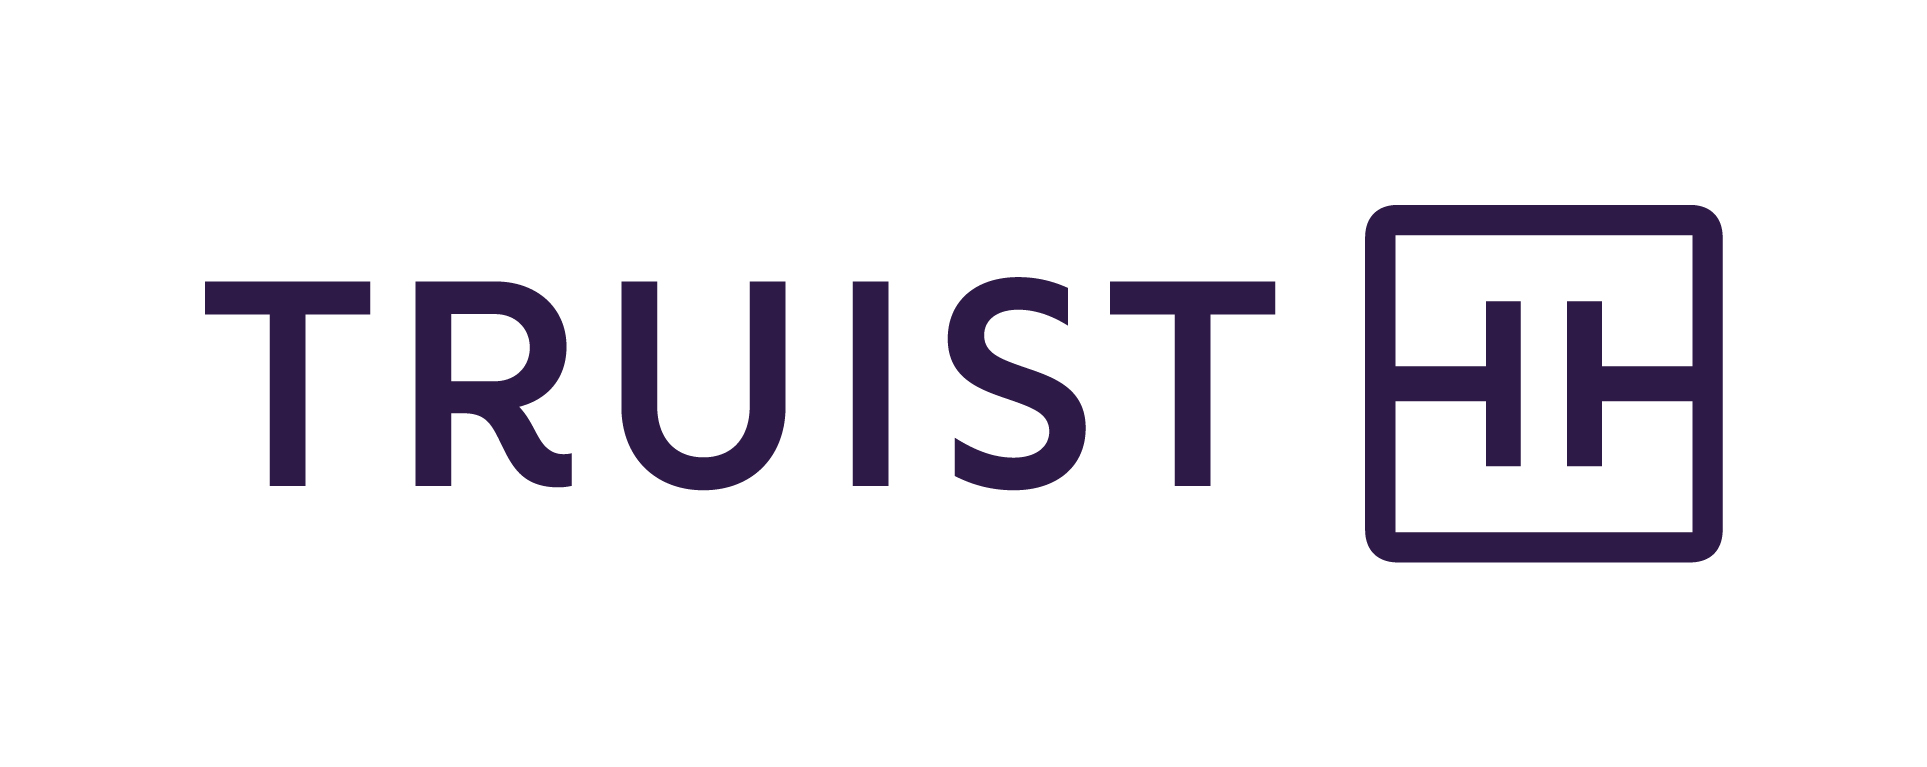 2021 Truist logo